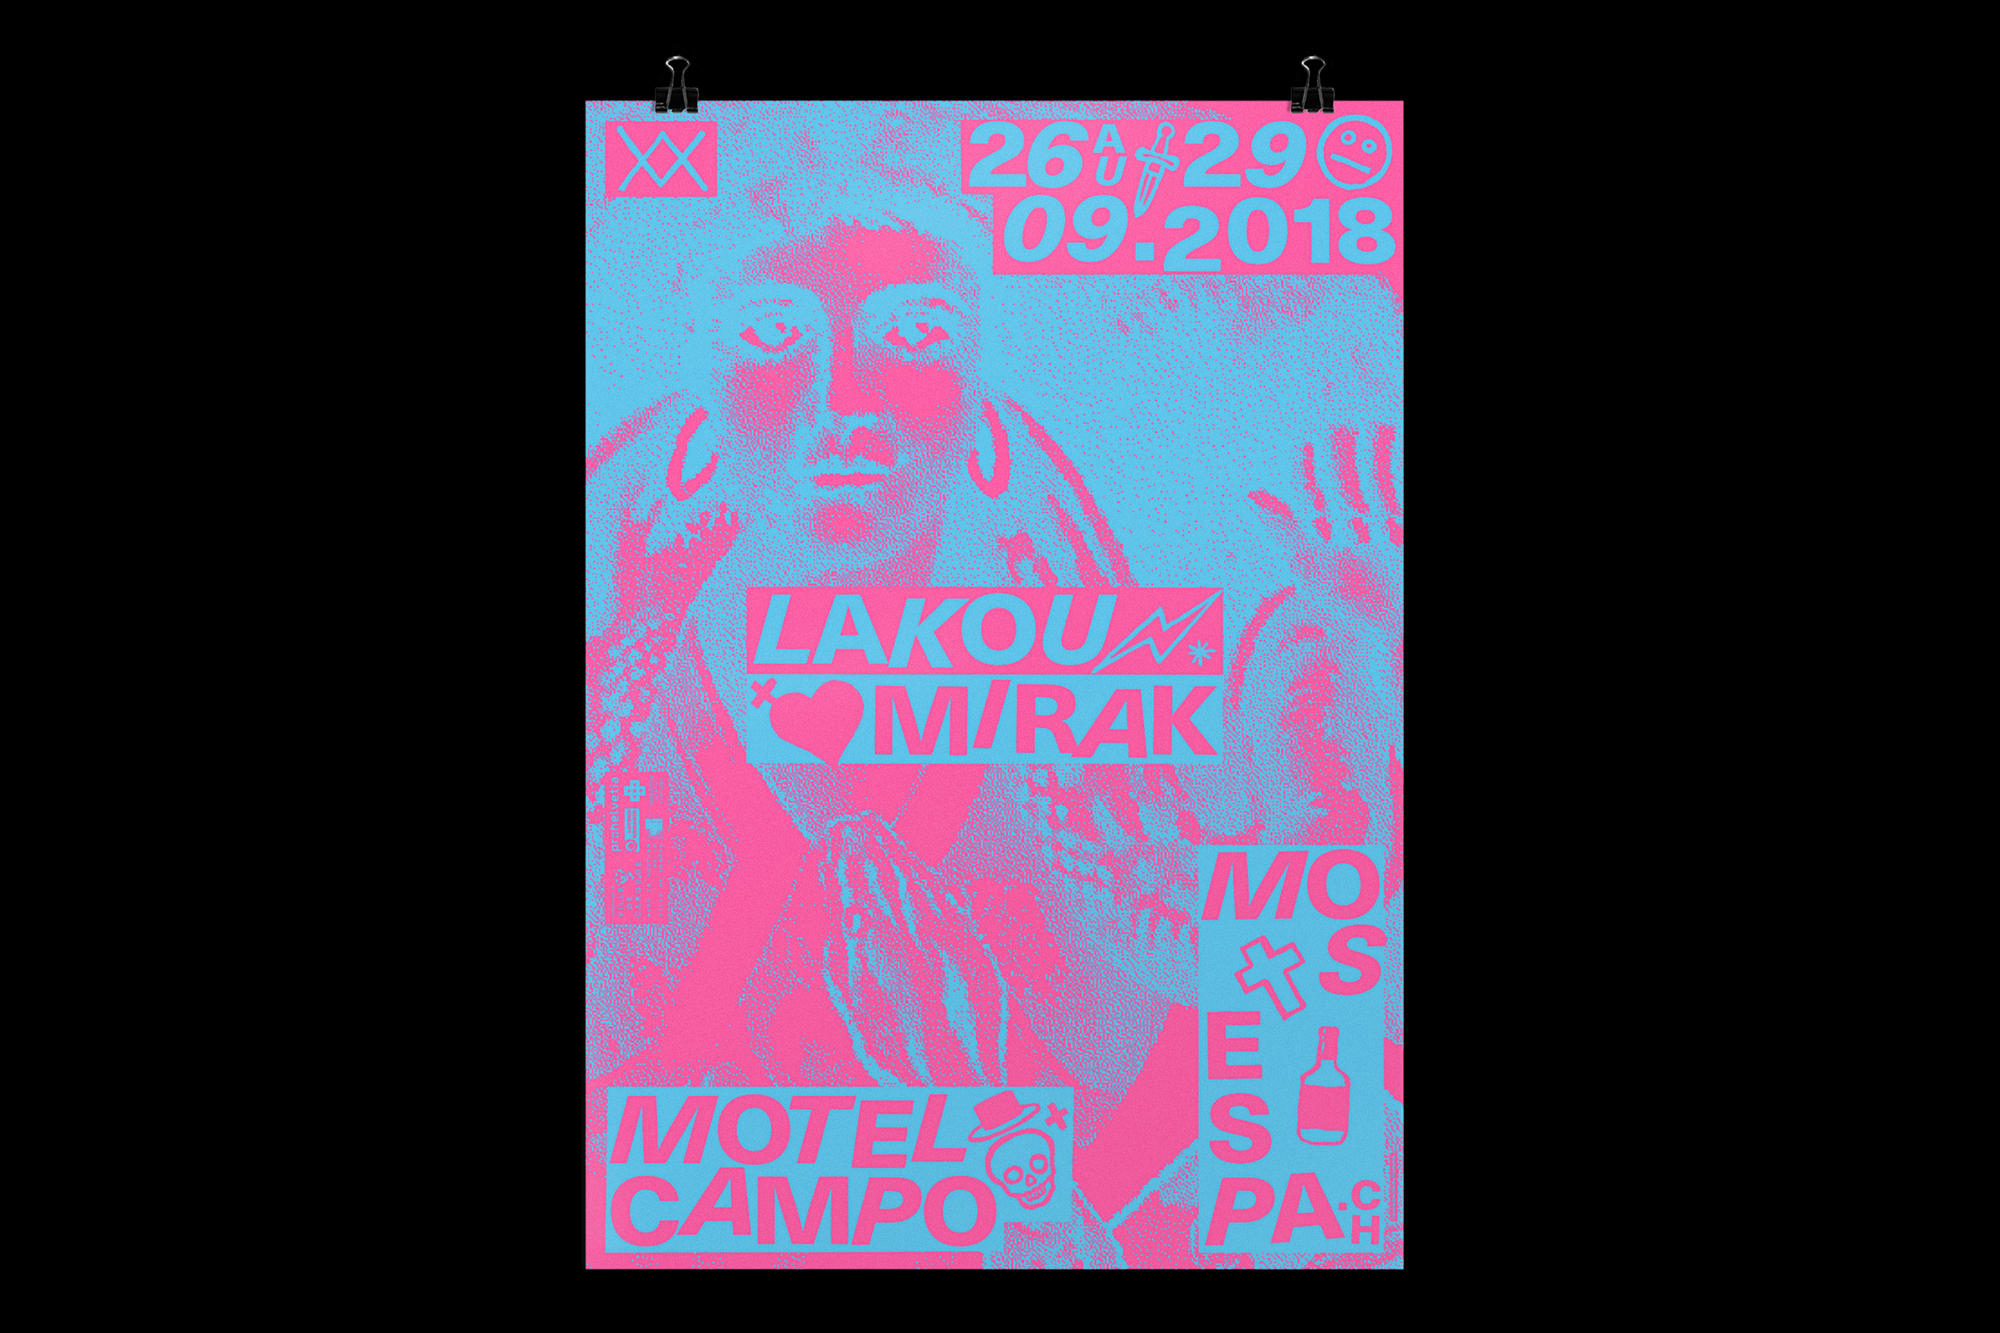 Graphisme graphic design graphique  affiche poster swissposter culture culturel promotion festival musique motel campo mos espa 2018 vaudou voodoo haiti 